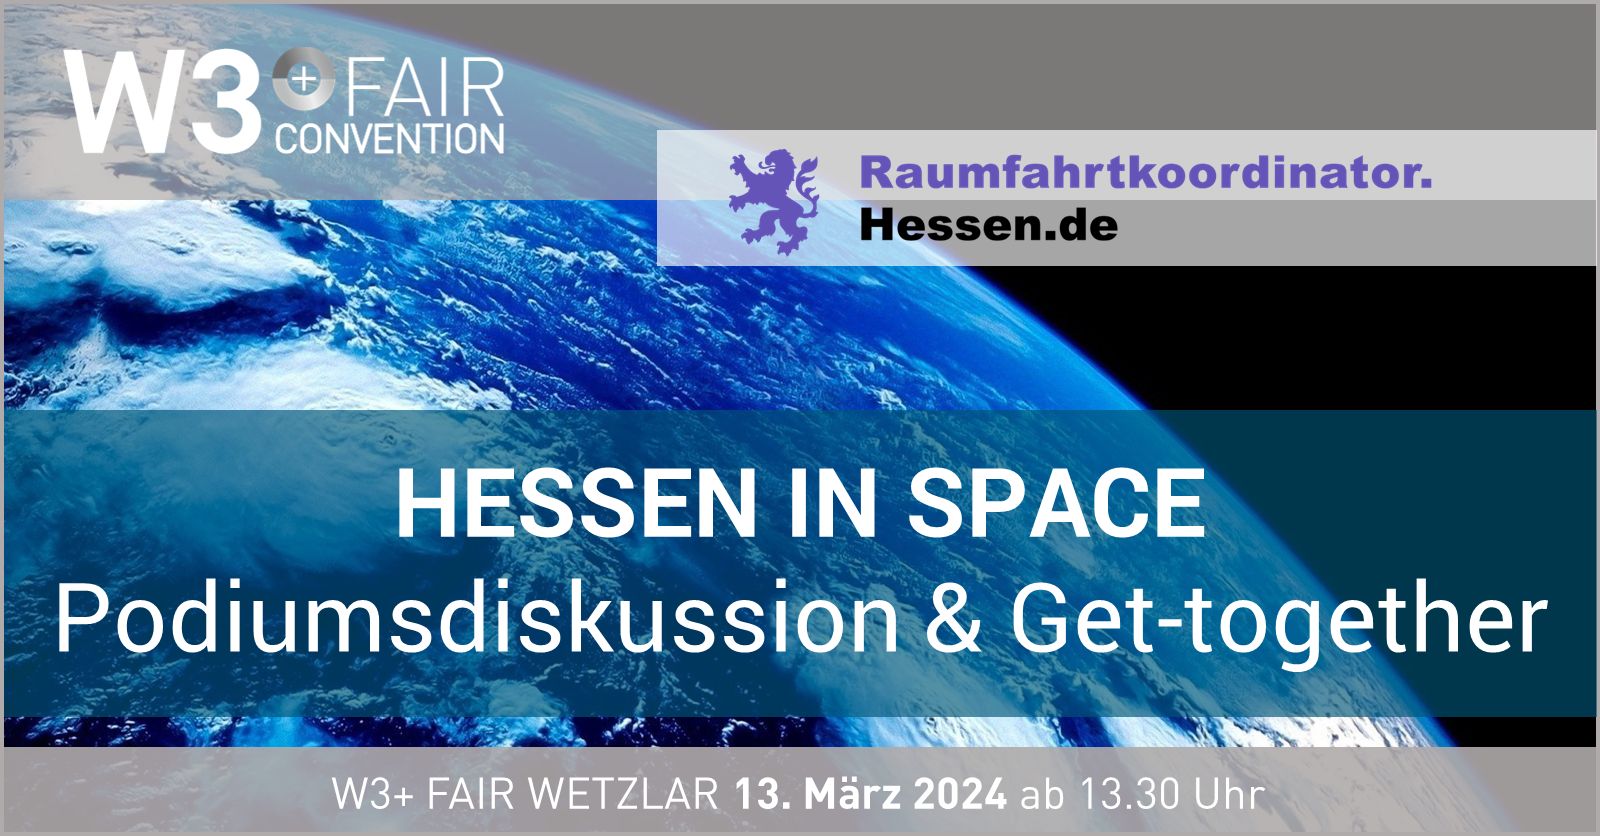 Hessen in space mit Podiumsdiskussion und Get-together auf der W3+ Fair in Wetzlar 2024